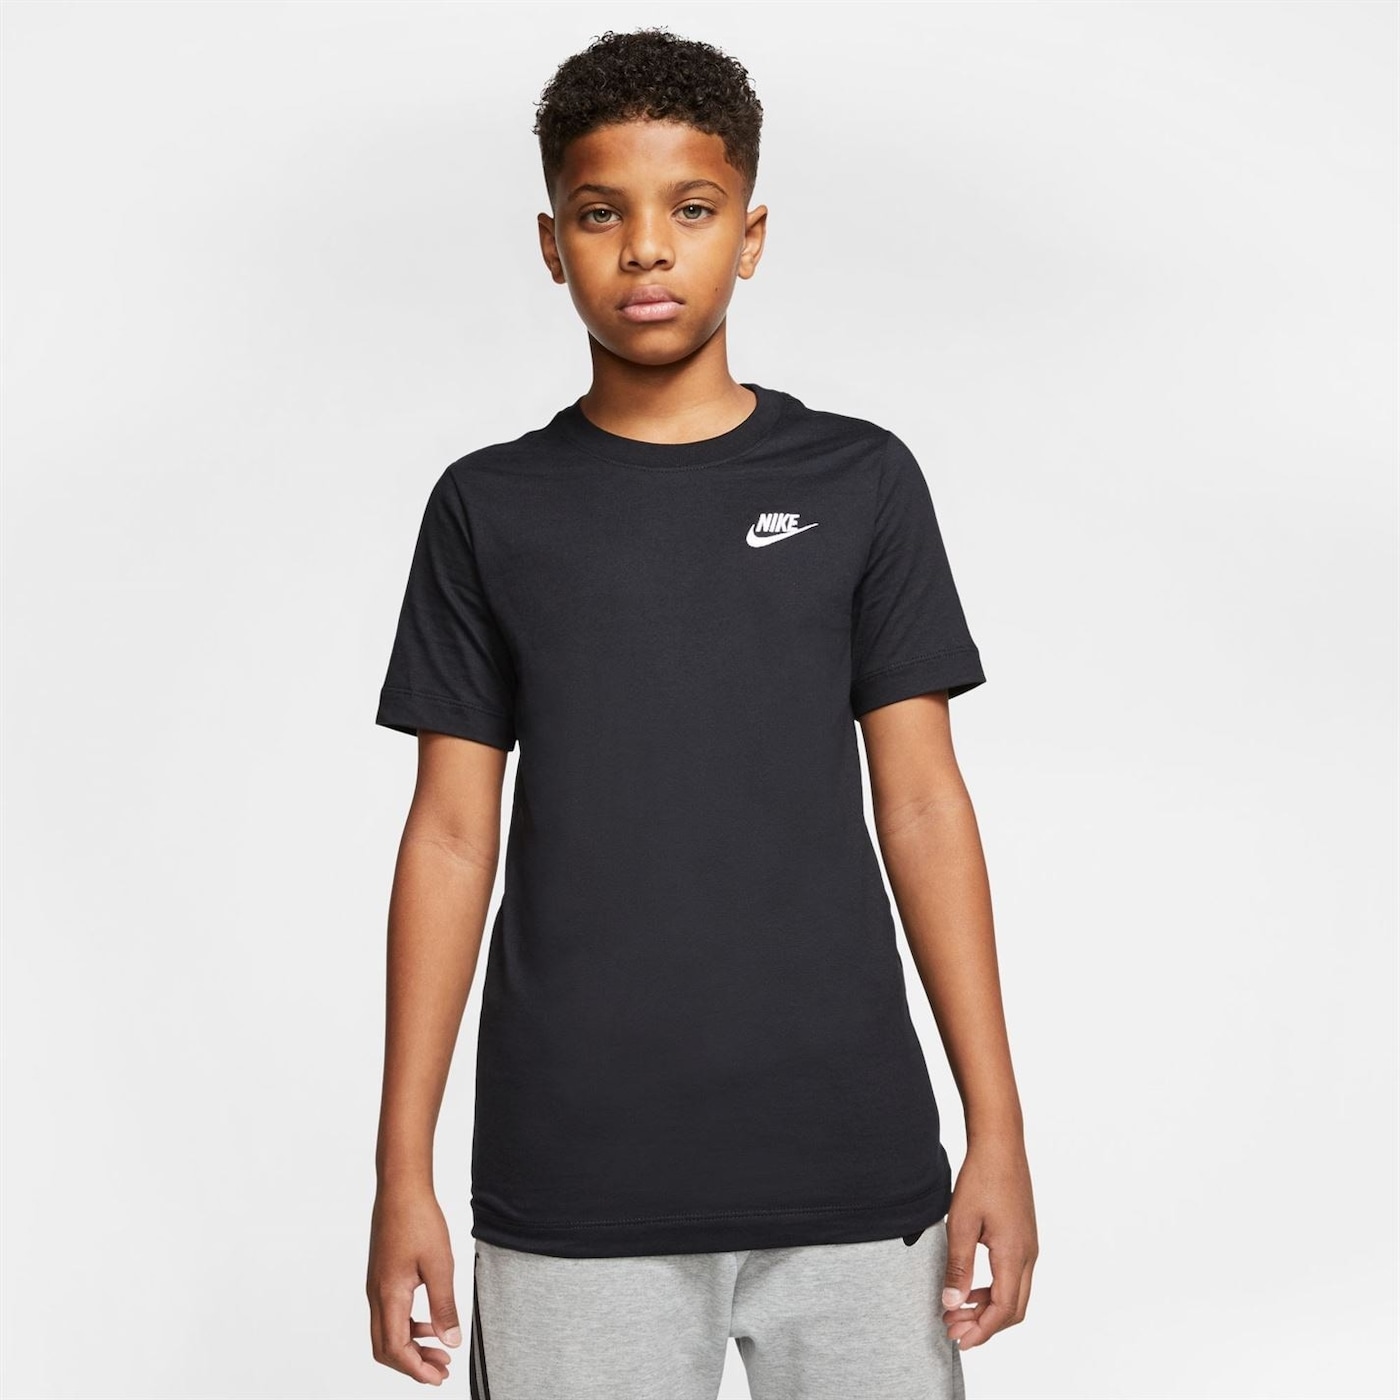 Деца  Облекло за момчета  Блузи  С къс ръкав Nike Futura T Shirt Junior Boys 1009521-6185318